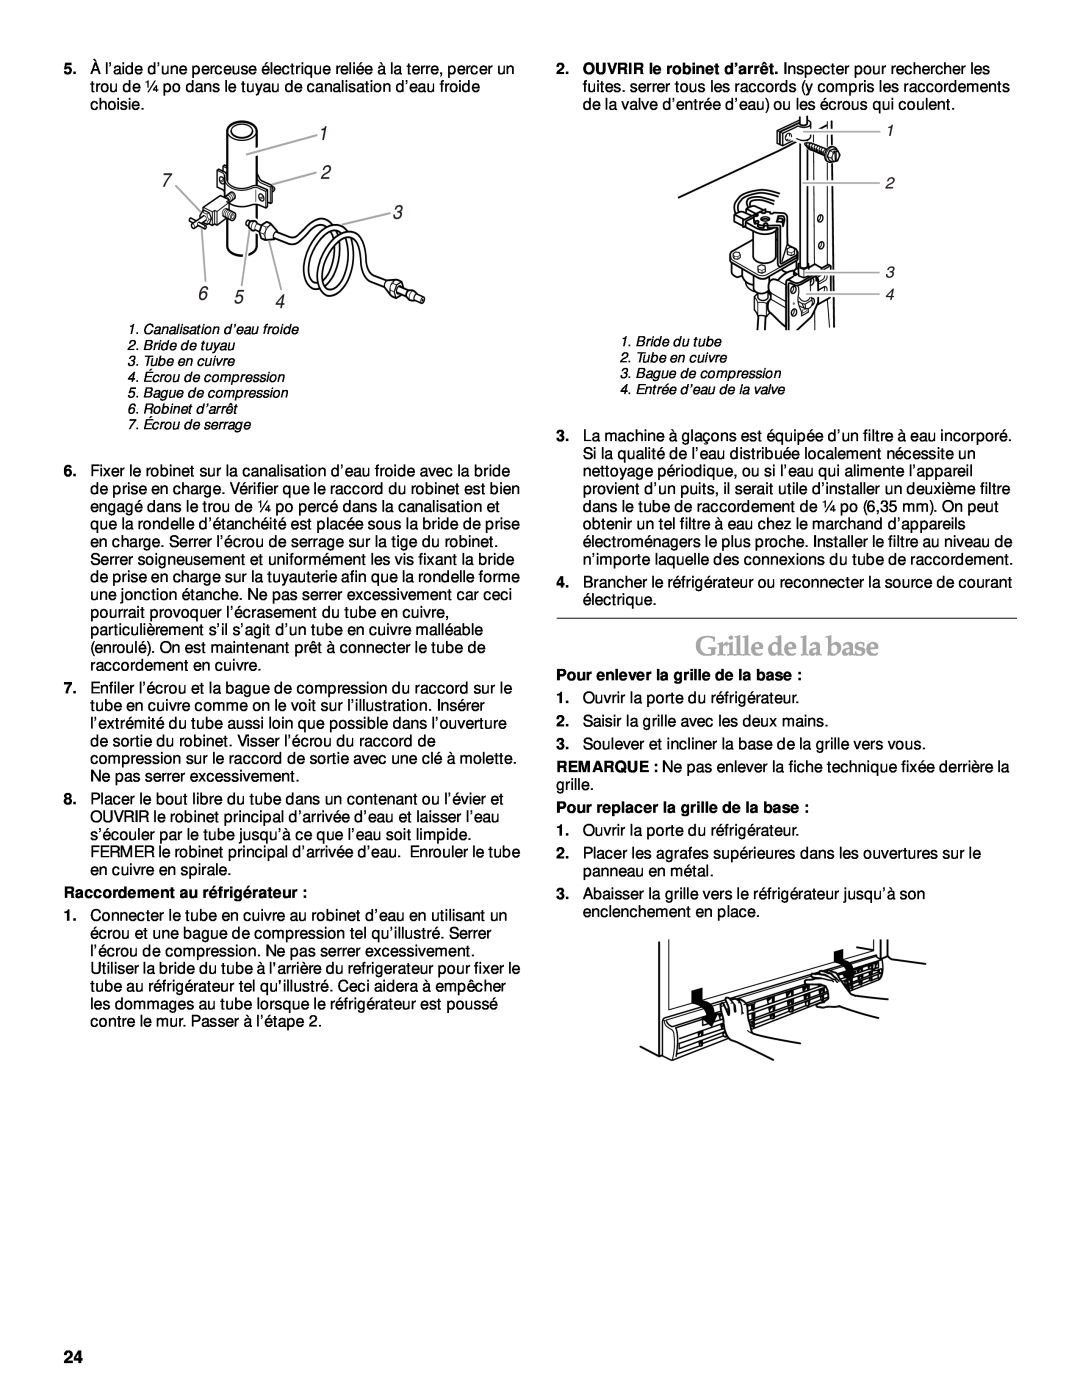 KitchenAid 2205264 manual Grille de la base, Raccordement au réfrigérateur, Pour enlever la grille de la base 